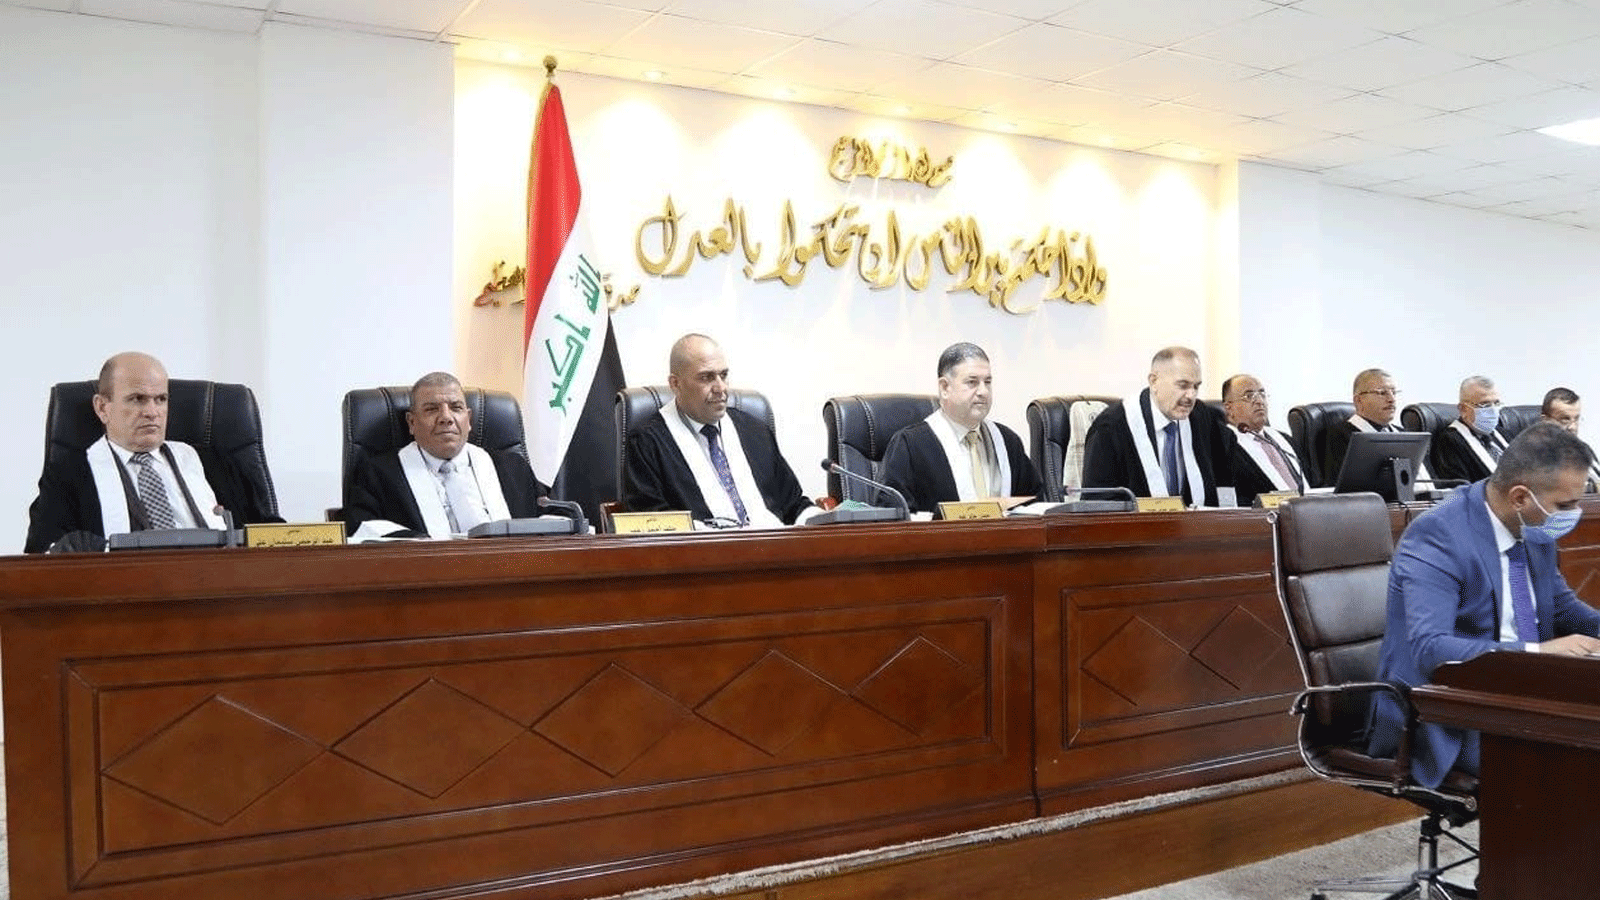 المحكمة الاتحادية العراقية العليا خلال انعقادها حيث حكمت الاربعاء 7 أيلول\سبتمبر 2022 بعدم مسؤوليتها عن حلّ البرلمان وانما نوابه (إعلام القضاء)